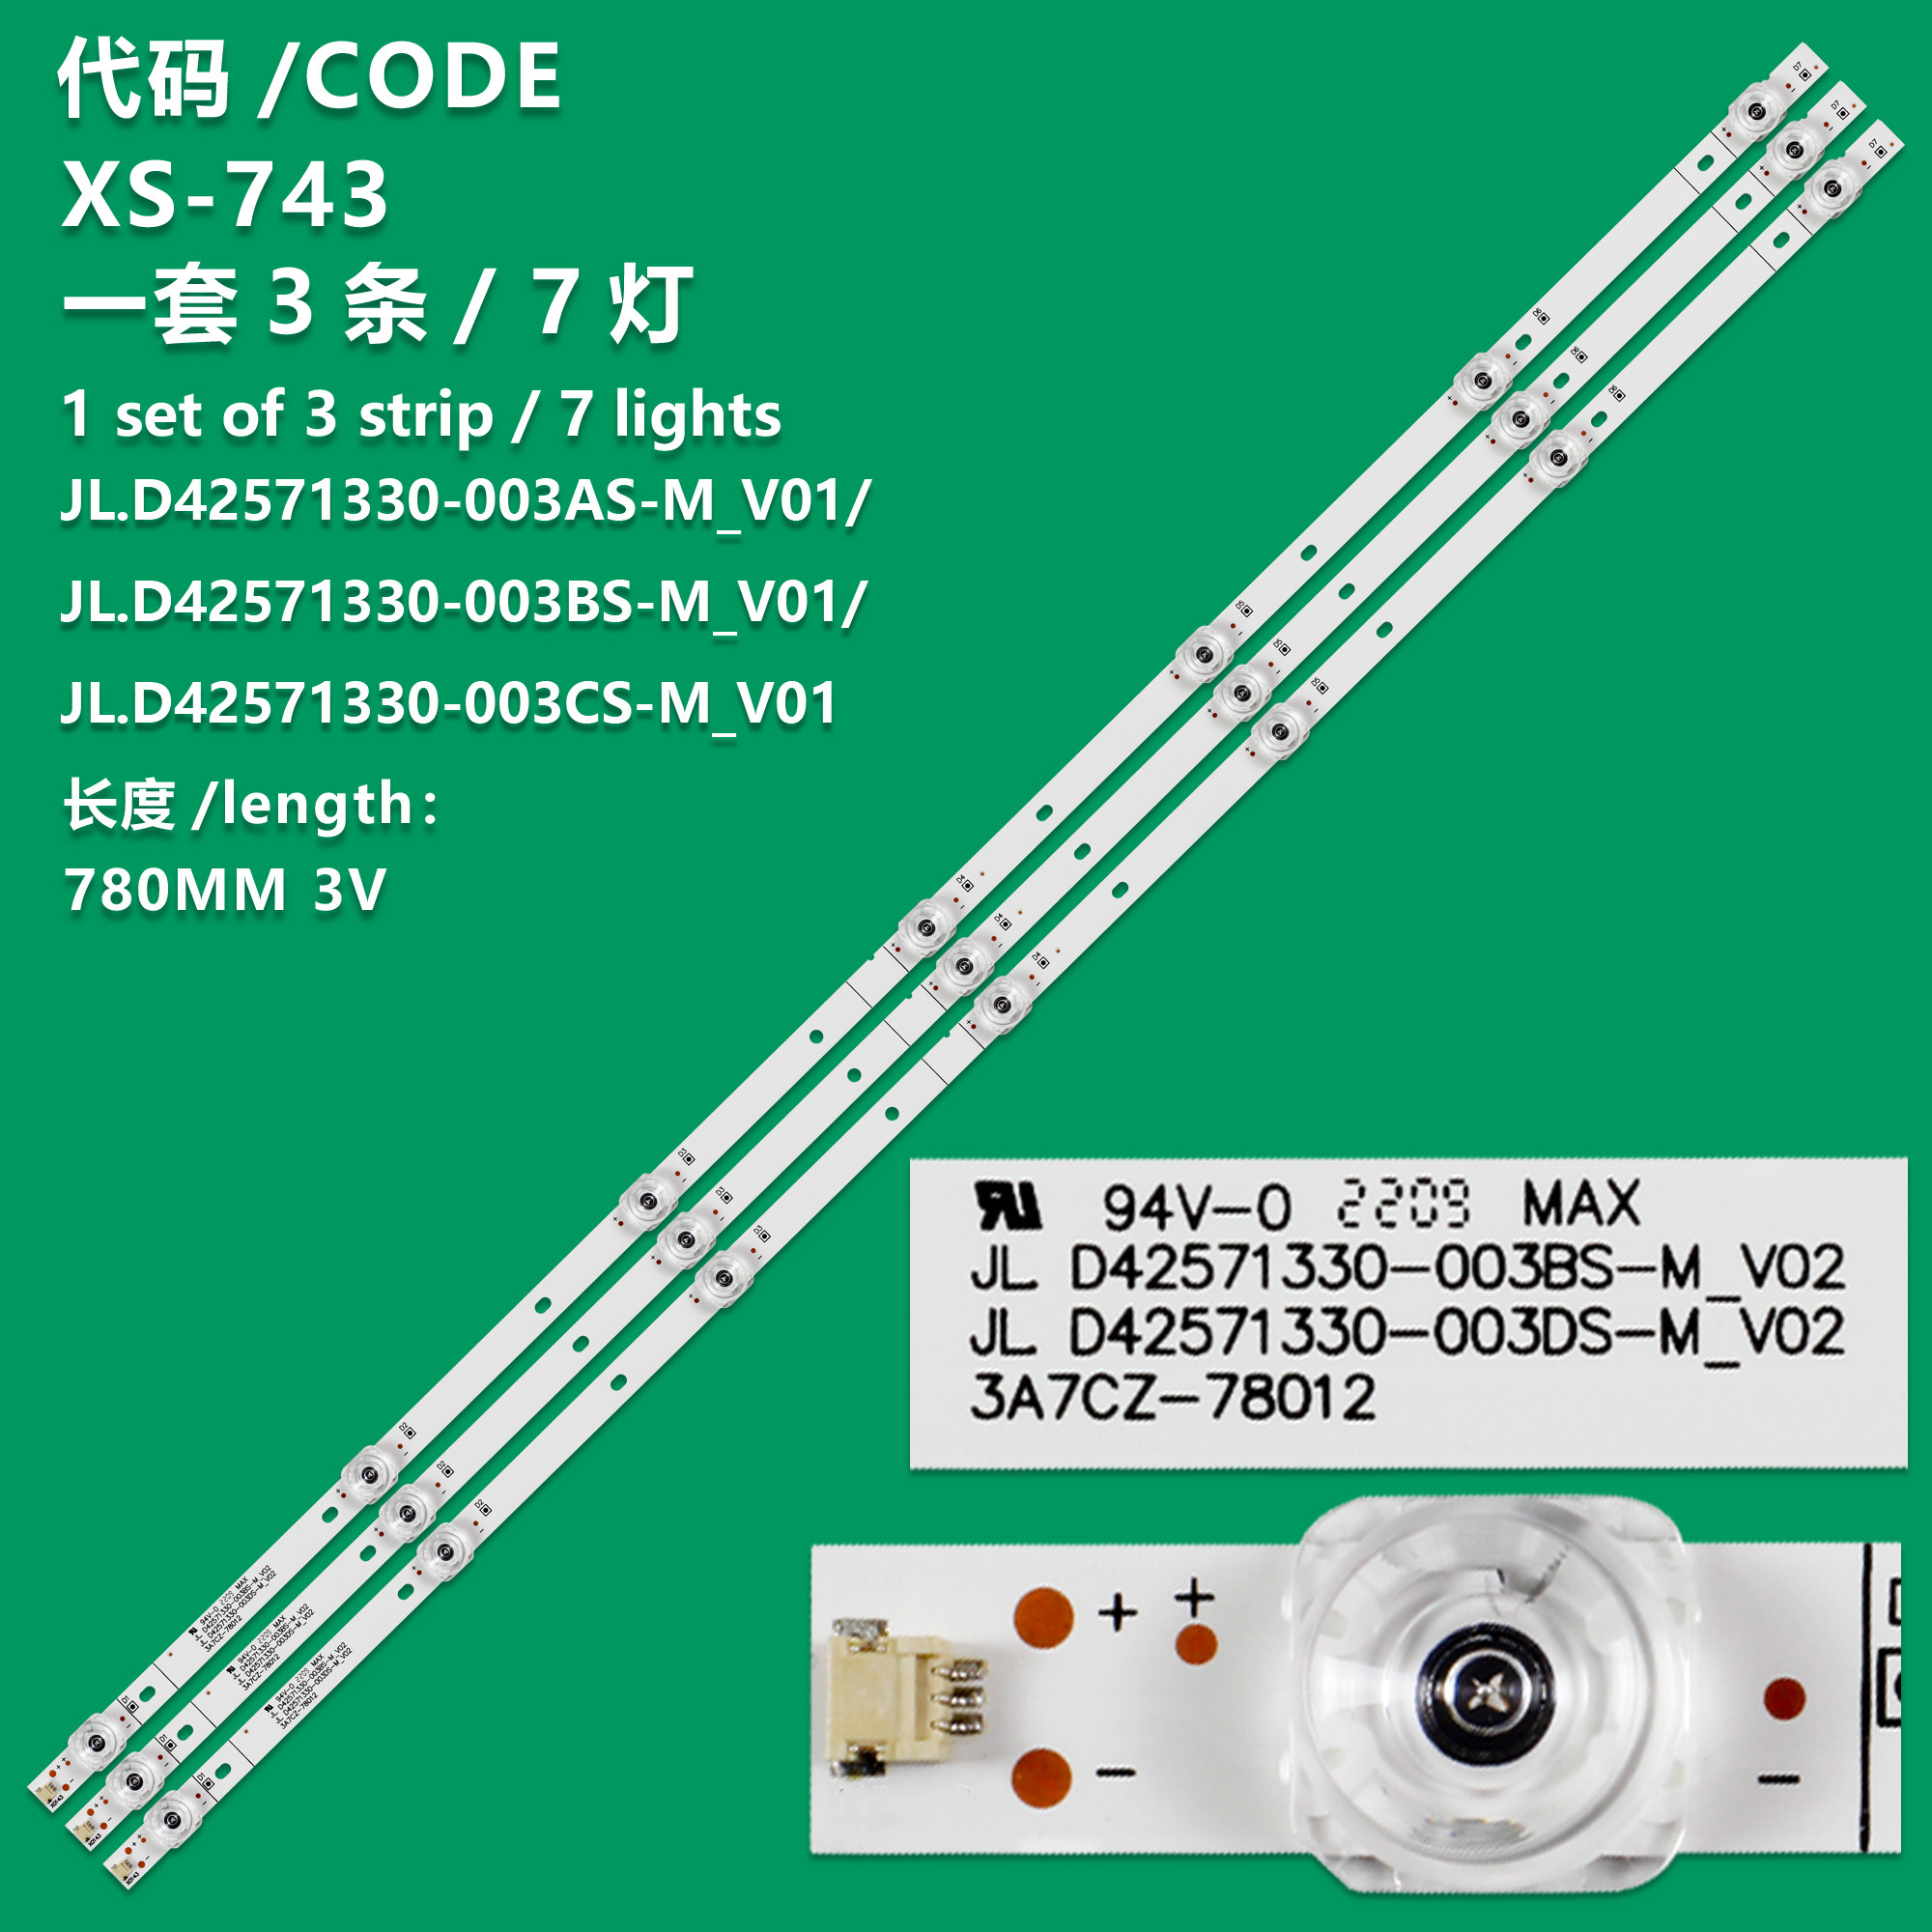 XS-743    3pcs LED strip for Hisense H43A6140 H43A6140UK LB43051 V0 JHD425S1U51-T0L2S0FM 